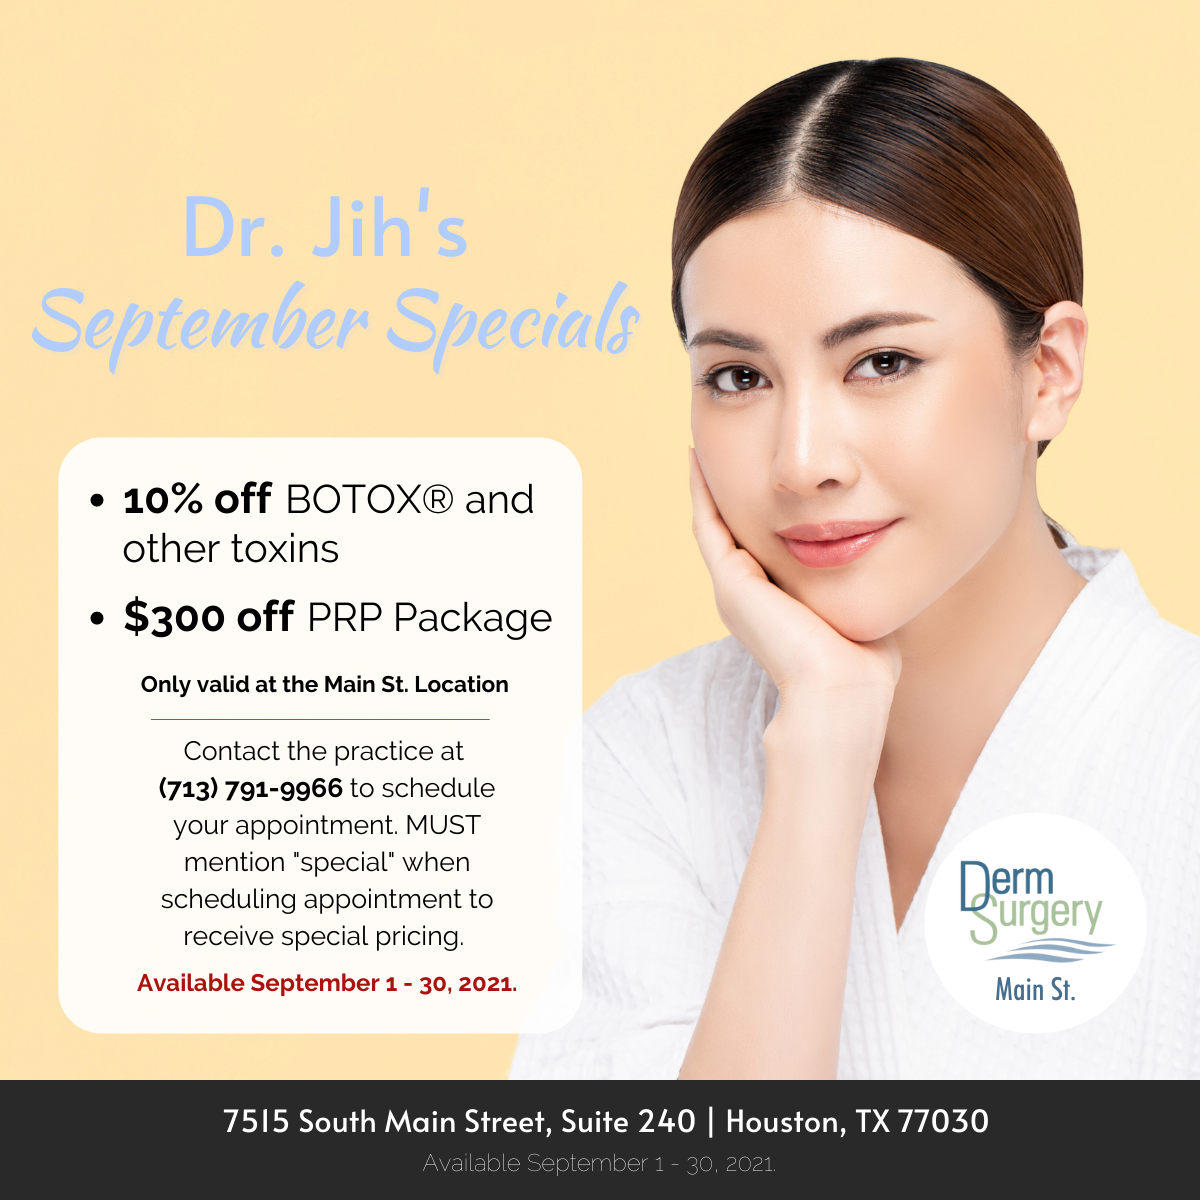 Dr. Jih's September Specials